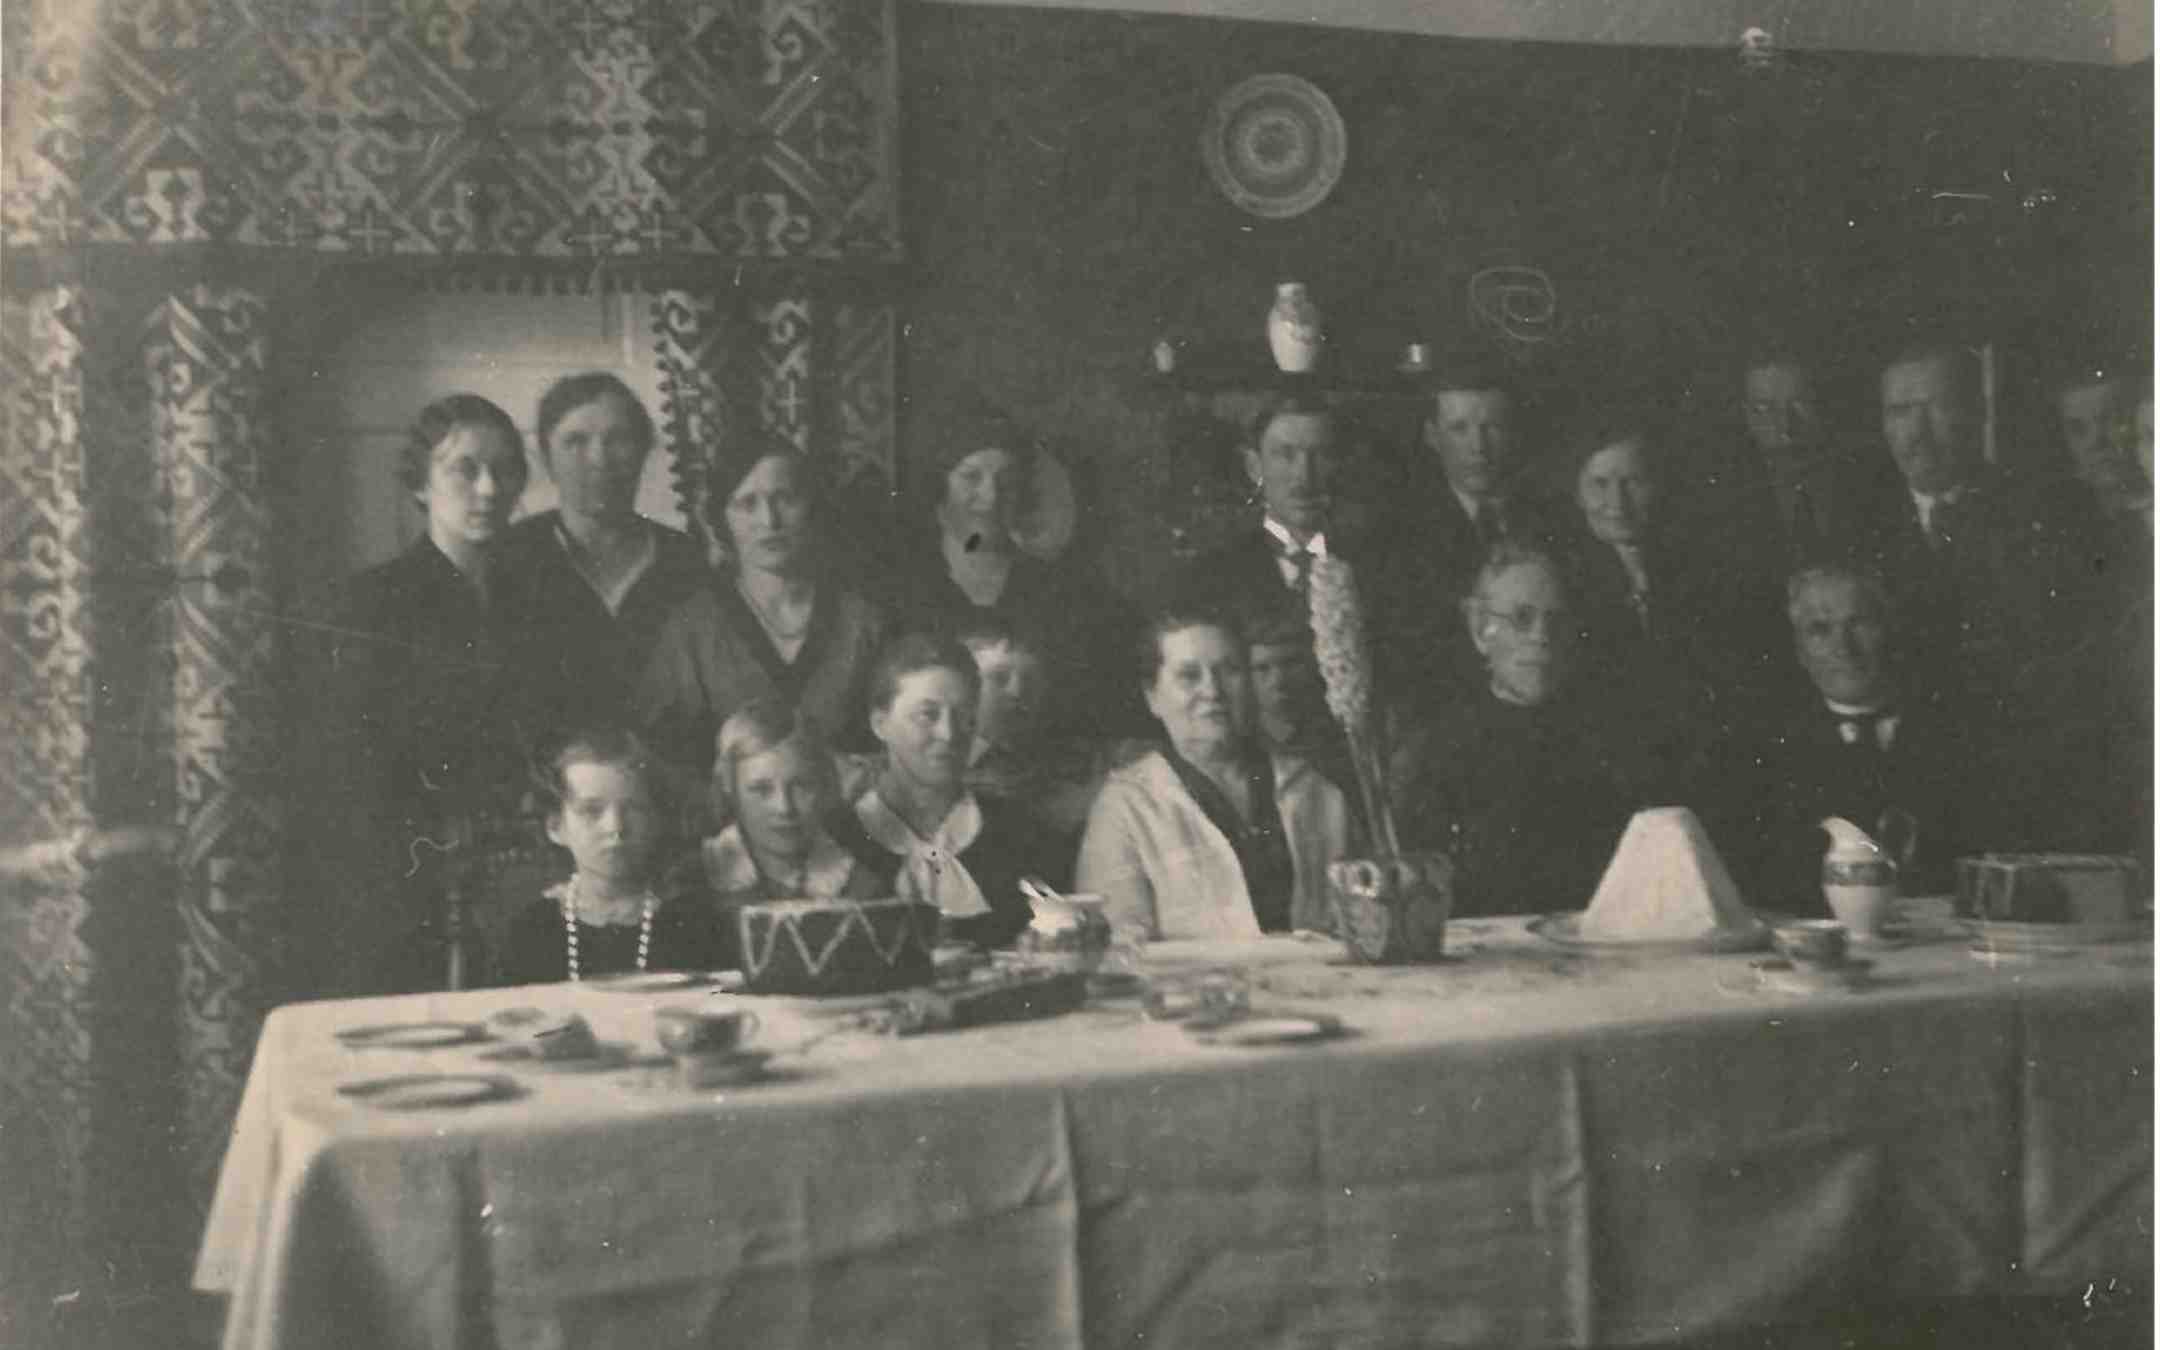 Pääsiäisvastaanotto Razumovien luona linnoituksen pappilassa 1930-luvulla Lappeenrannassa